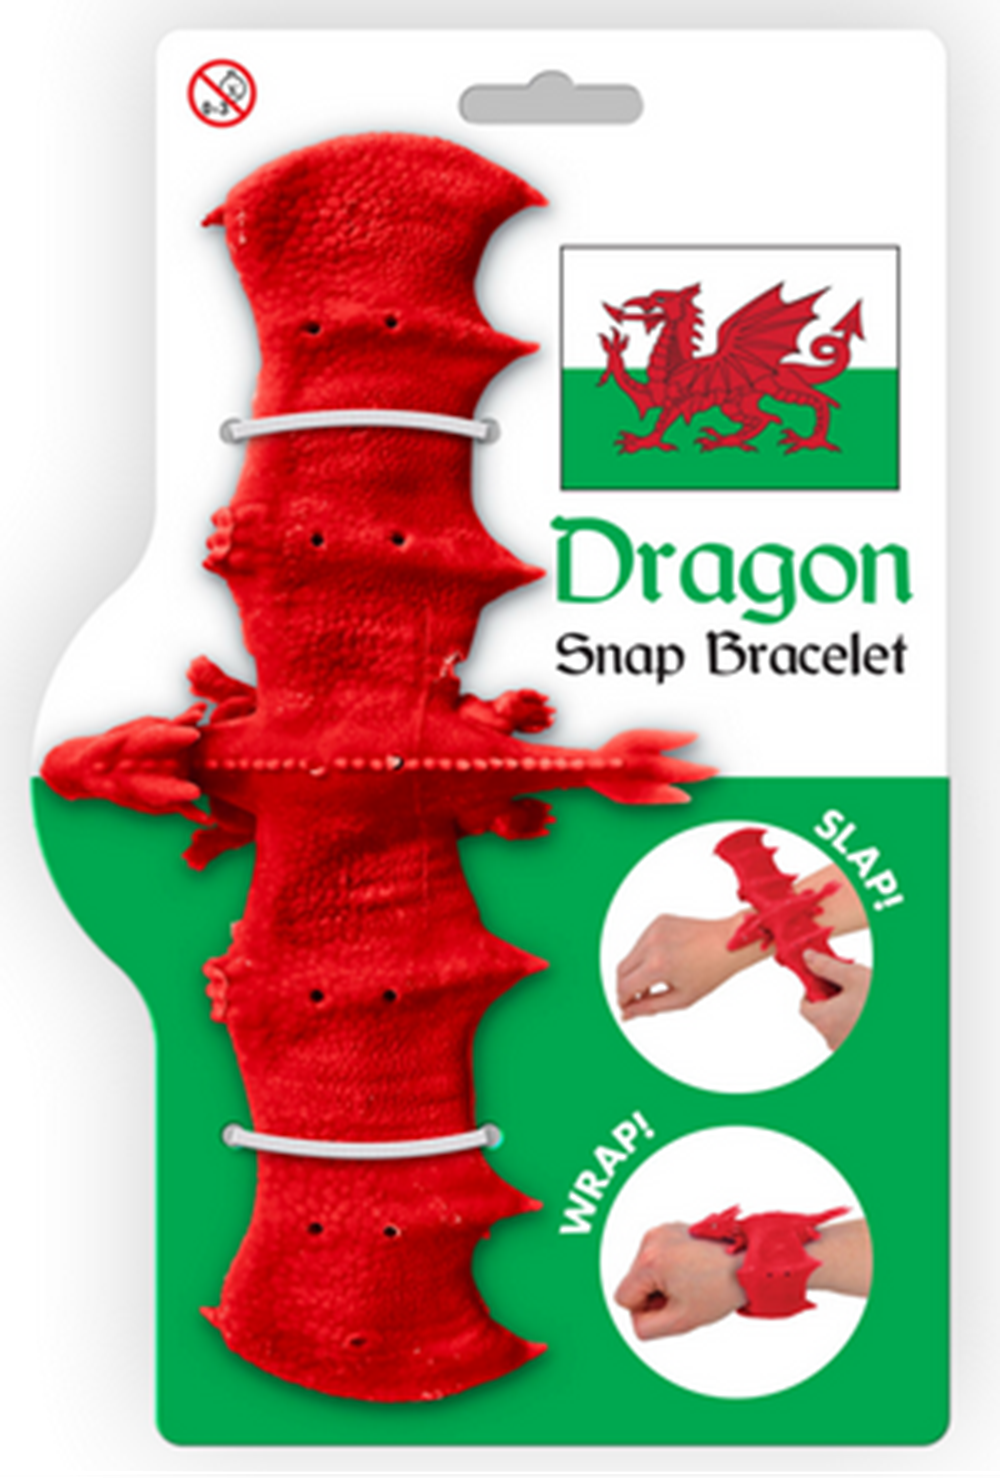 Kandytoys Welsh Dragon Snap Bracelet